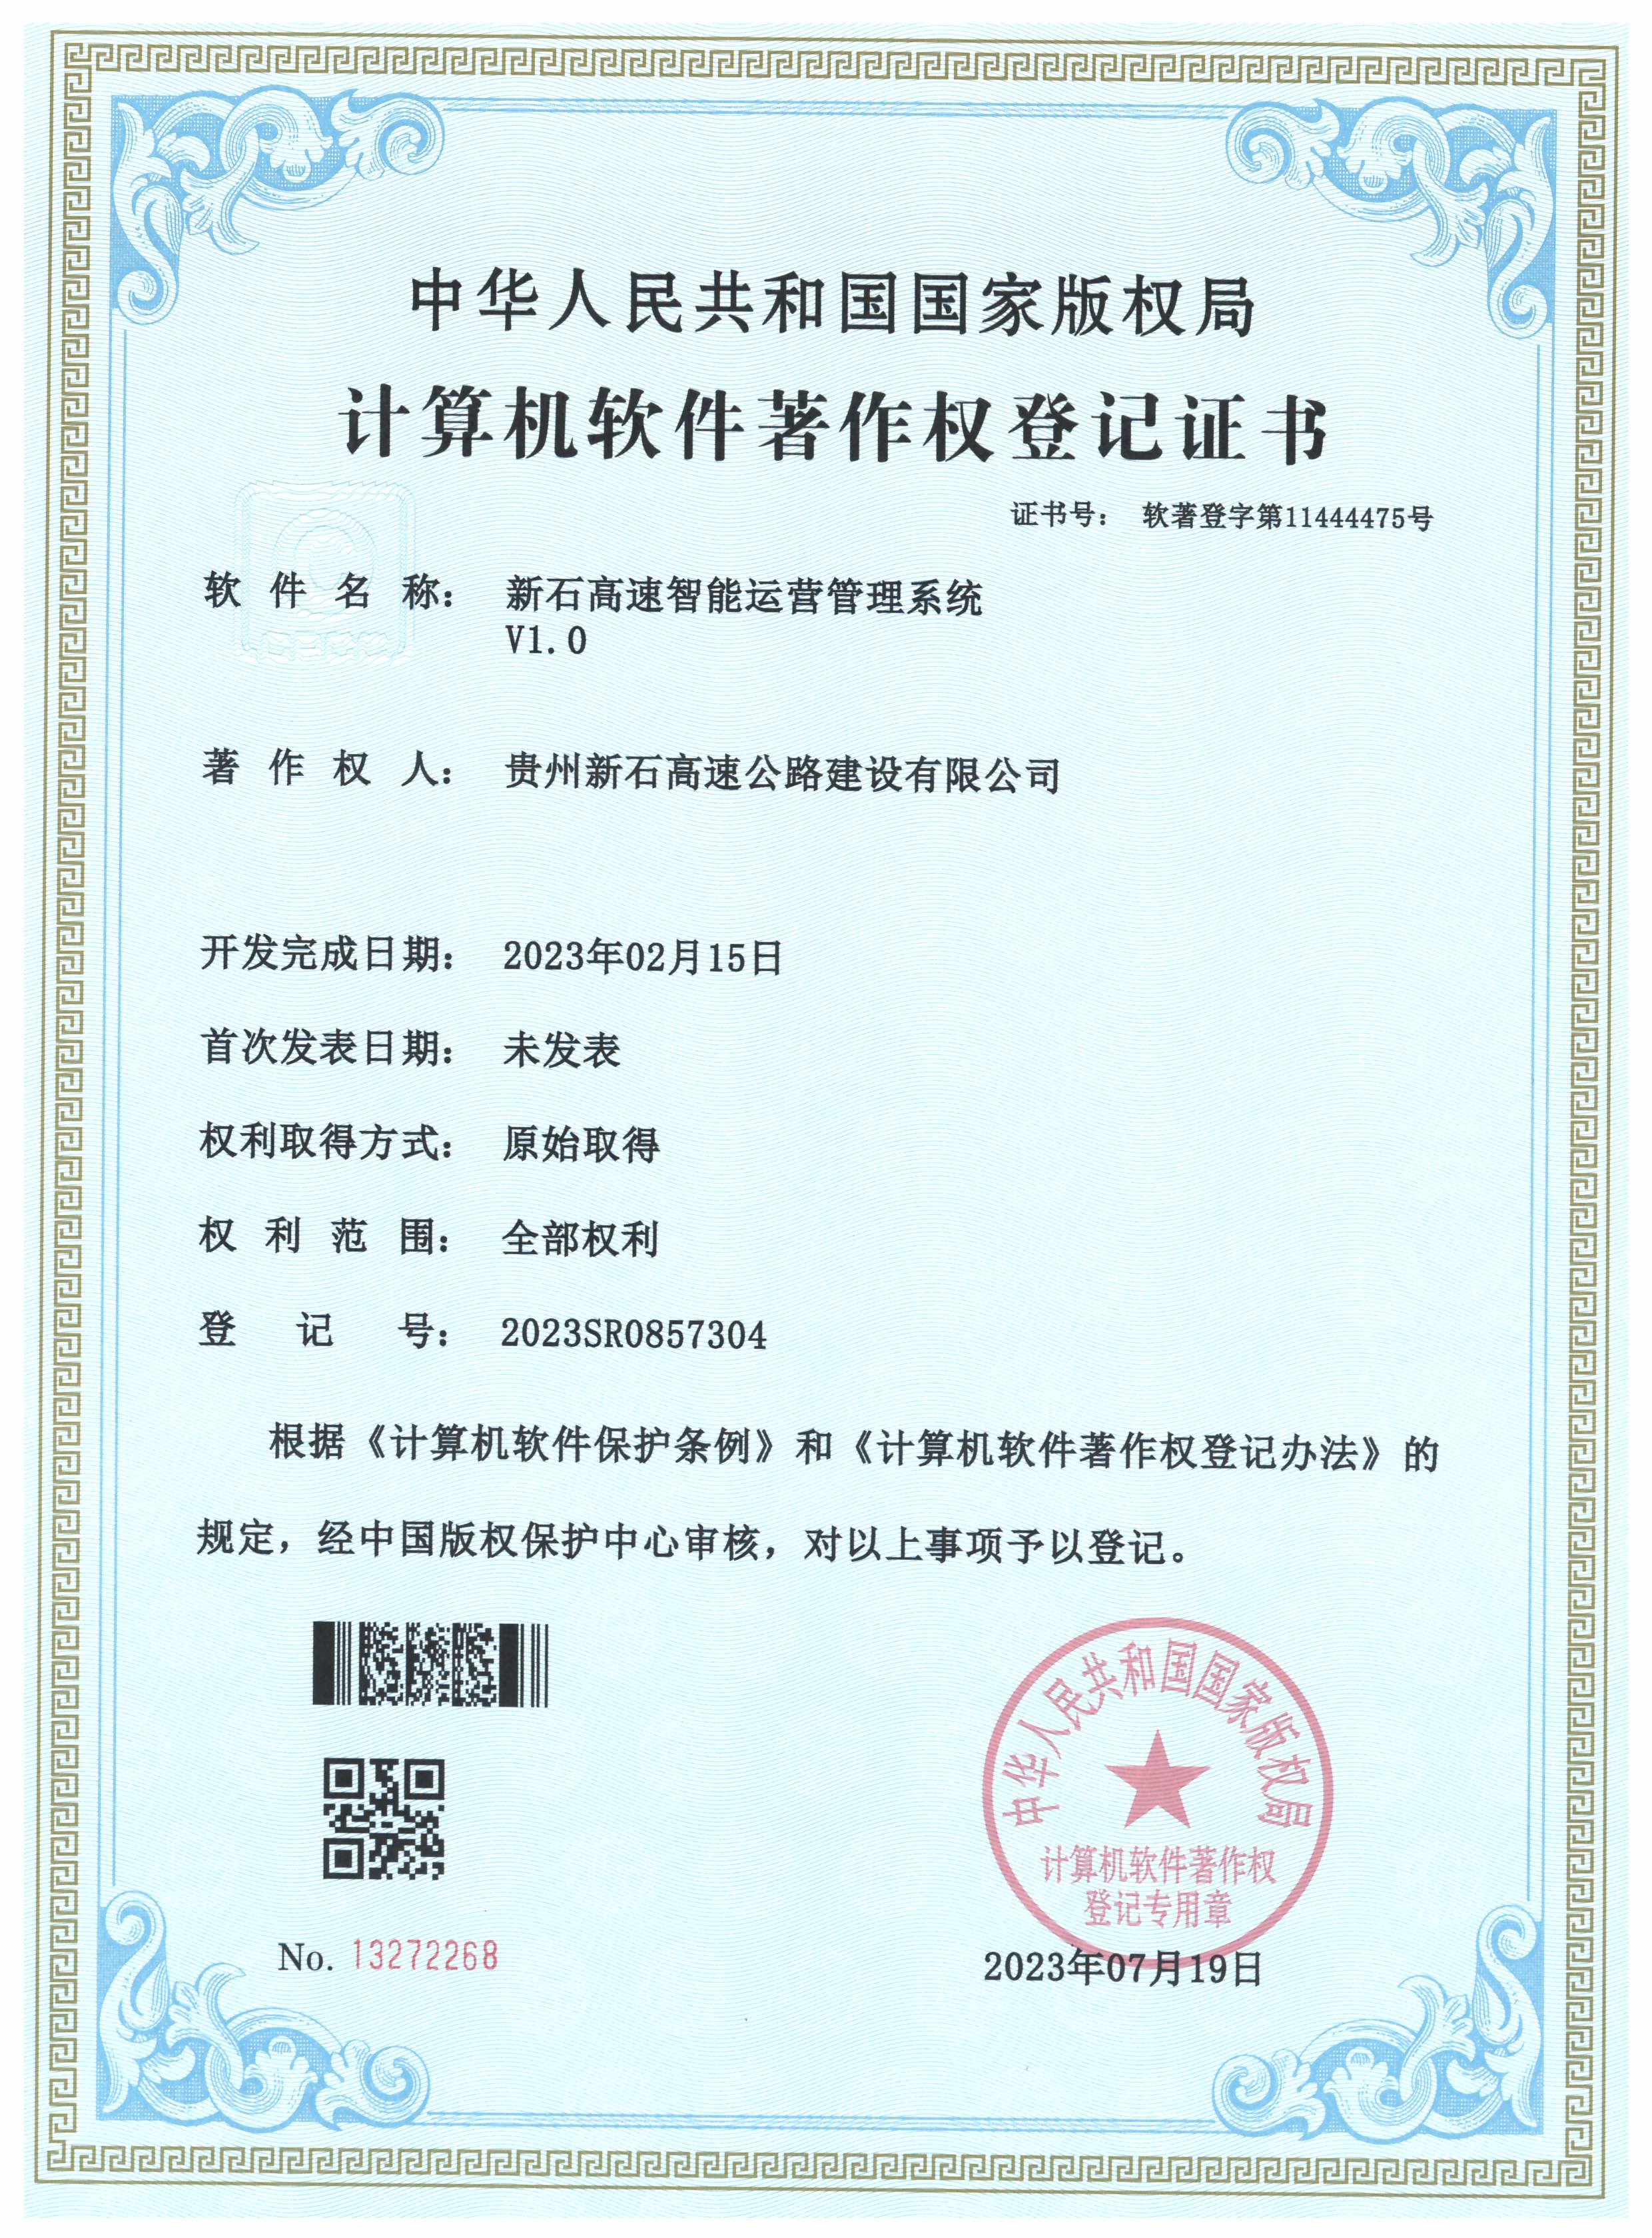 新石高速智能运营管理系统荣获计算机软件著作权登记证书.jpg